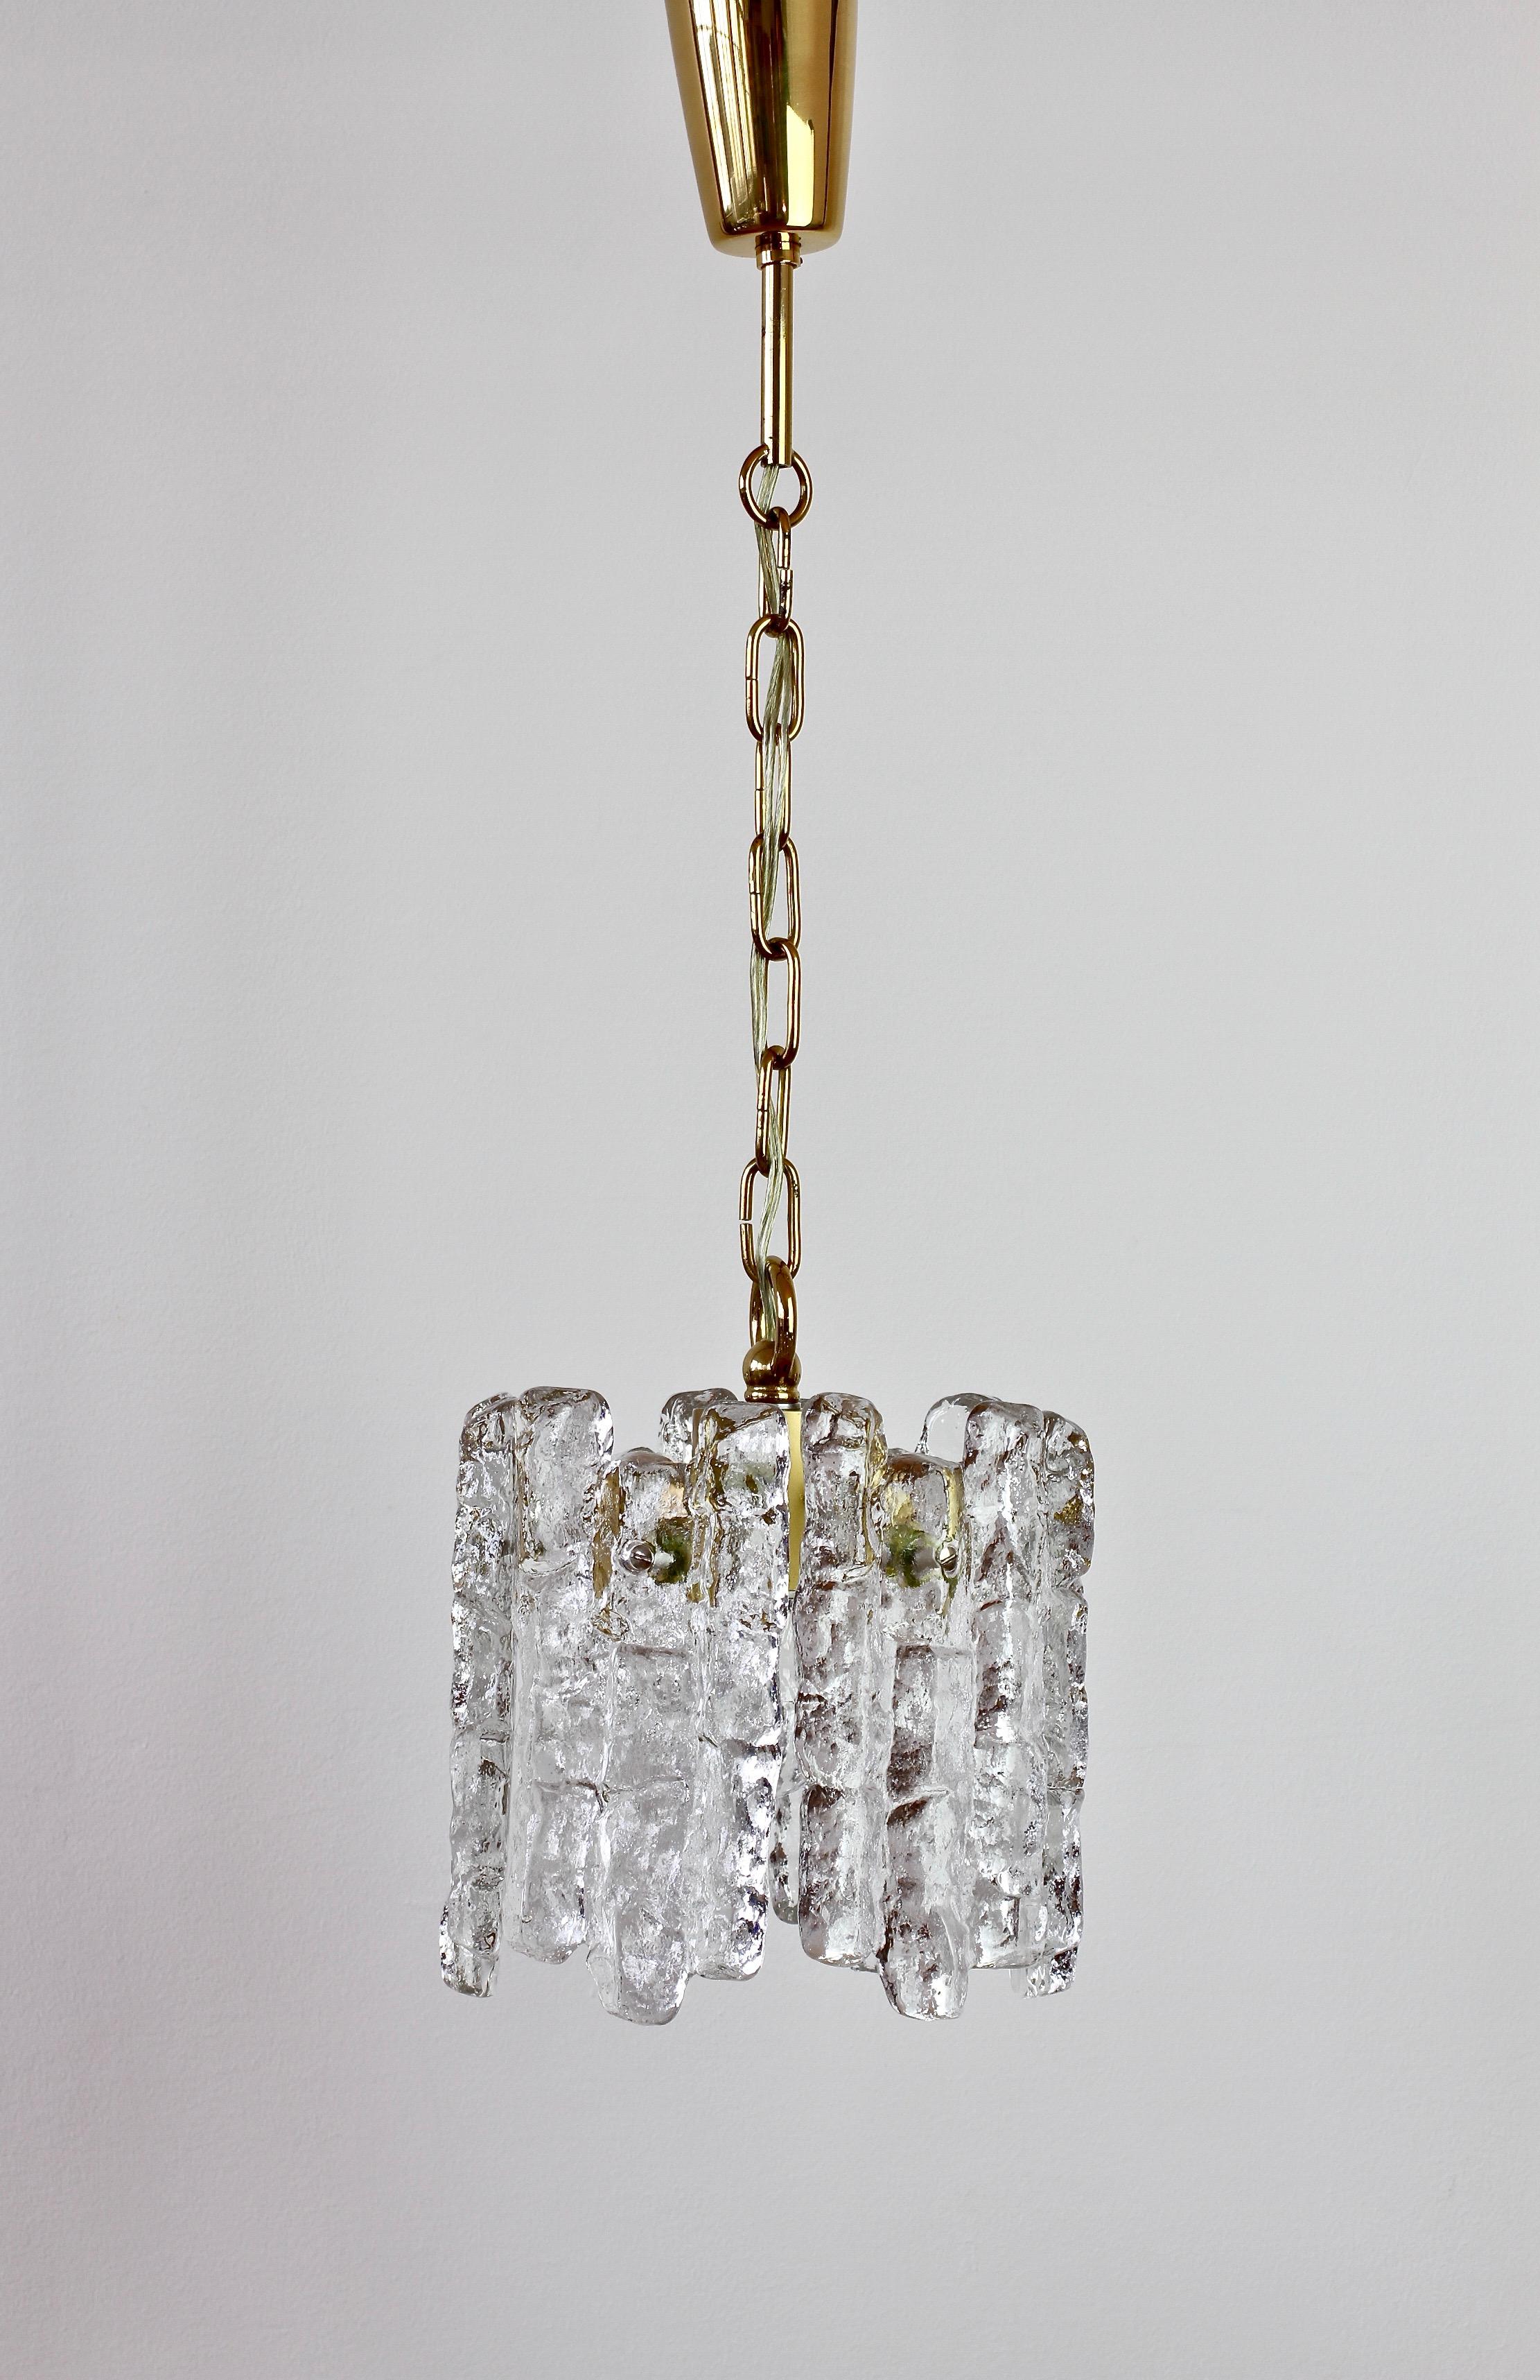 Lampe ou plafonnier en verre transparent texturé de Kalmar, datant du milieu du siècle dernier et fabriqué en Autriche, circa 1960. Six éléments en verre ressemblant à des cristaux de glace en train de fondre sont suspendus à un support en laiton